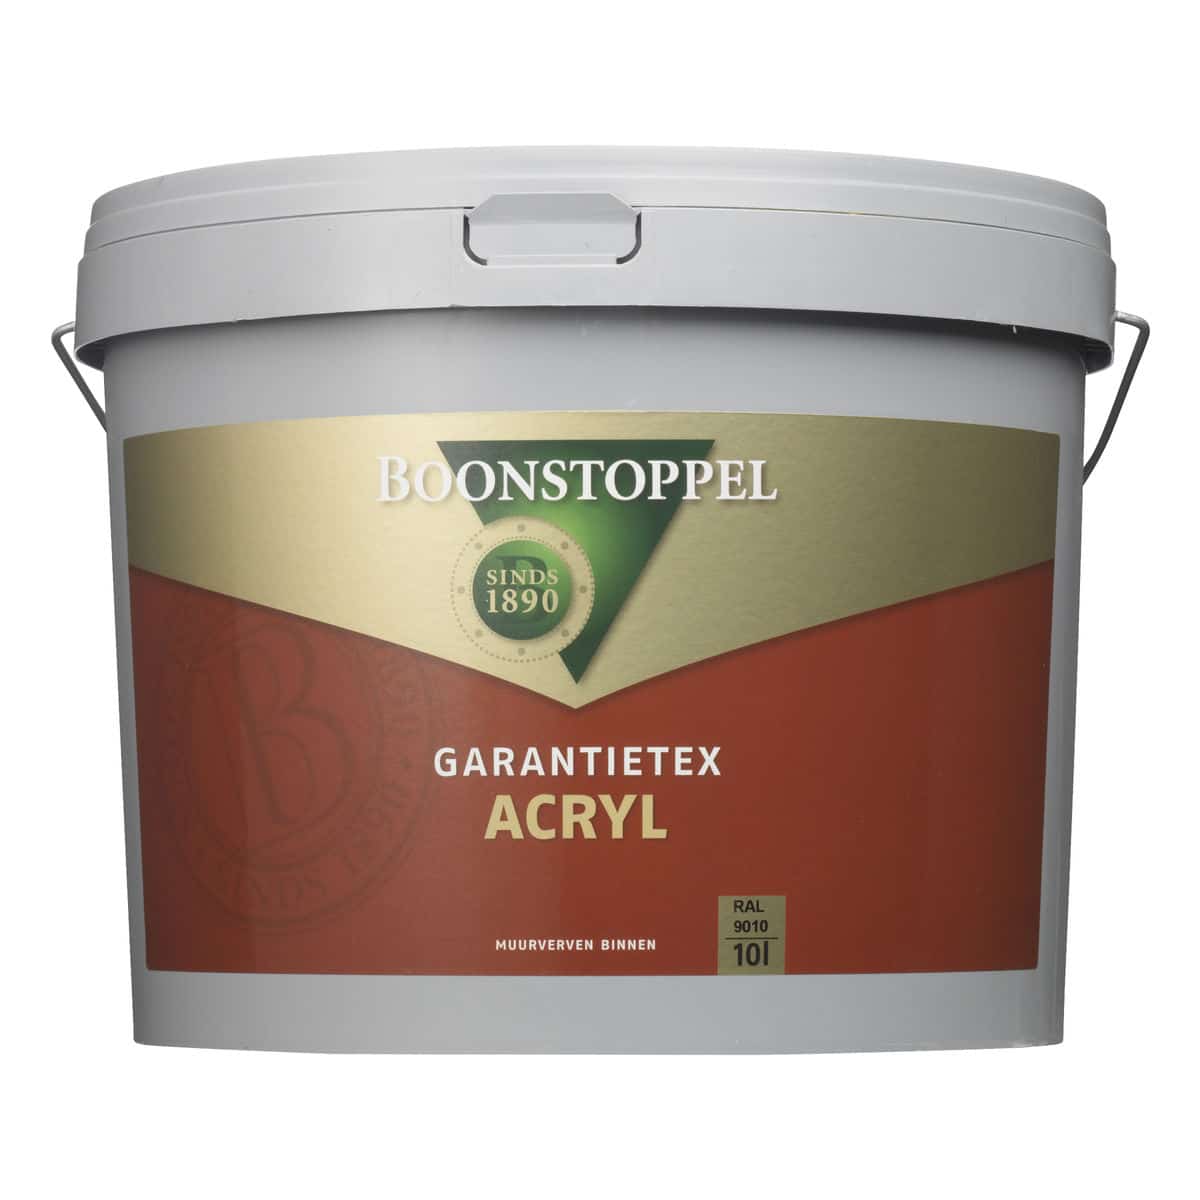 Boonstoppel Garantietex Acryl – 10 Liter